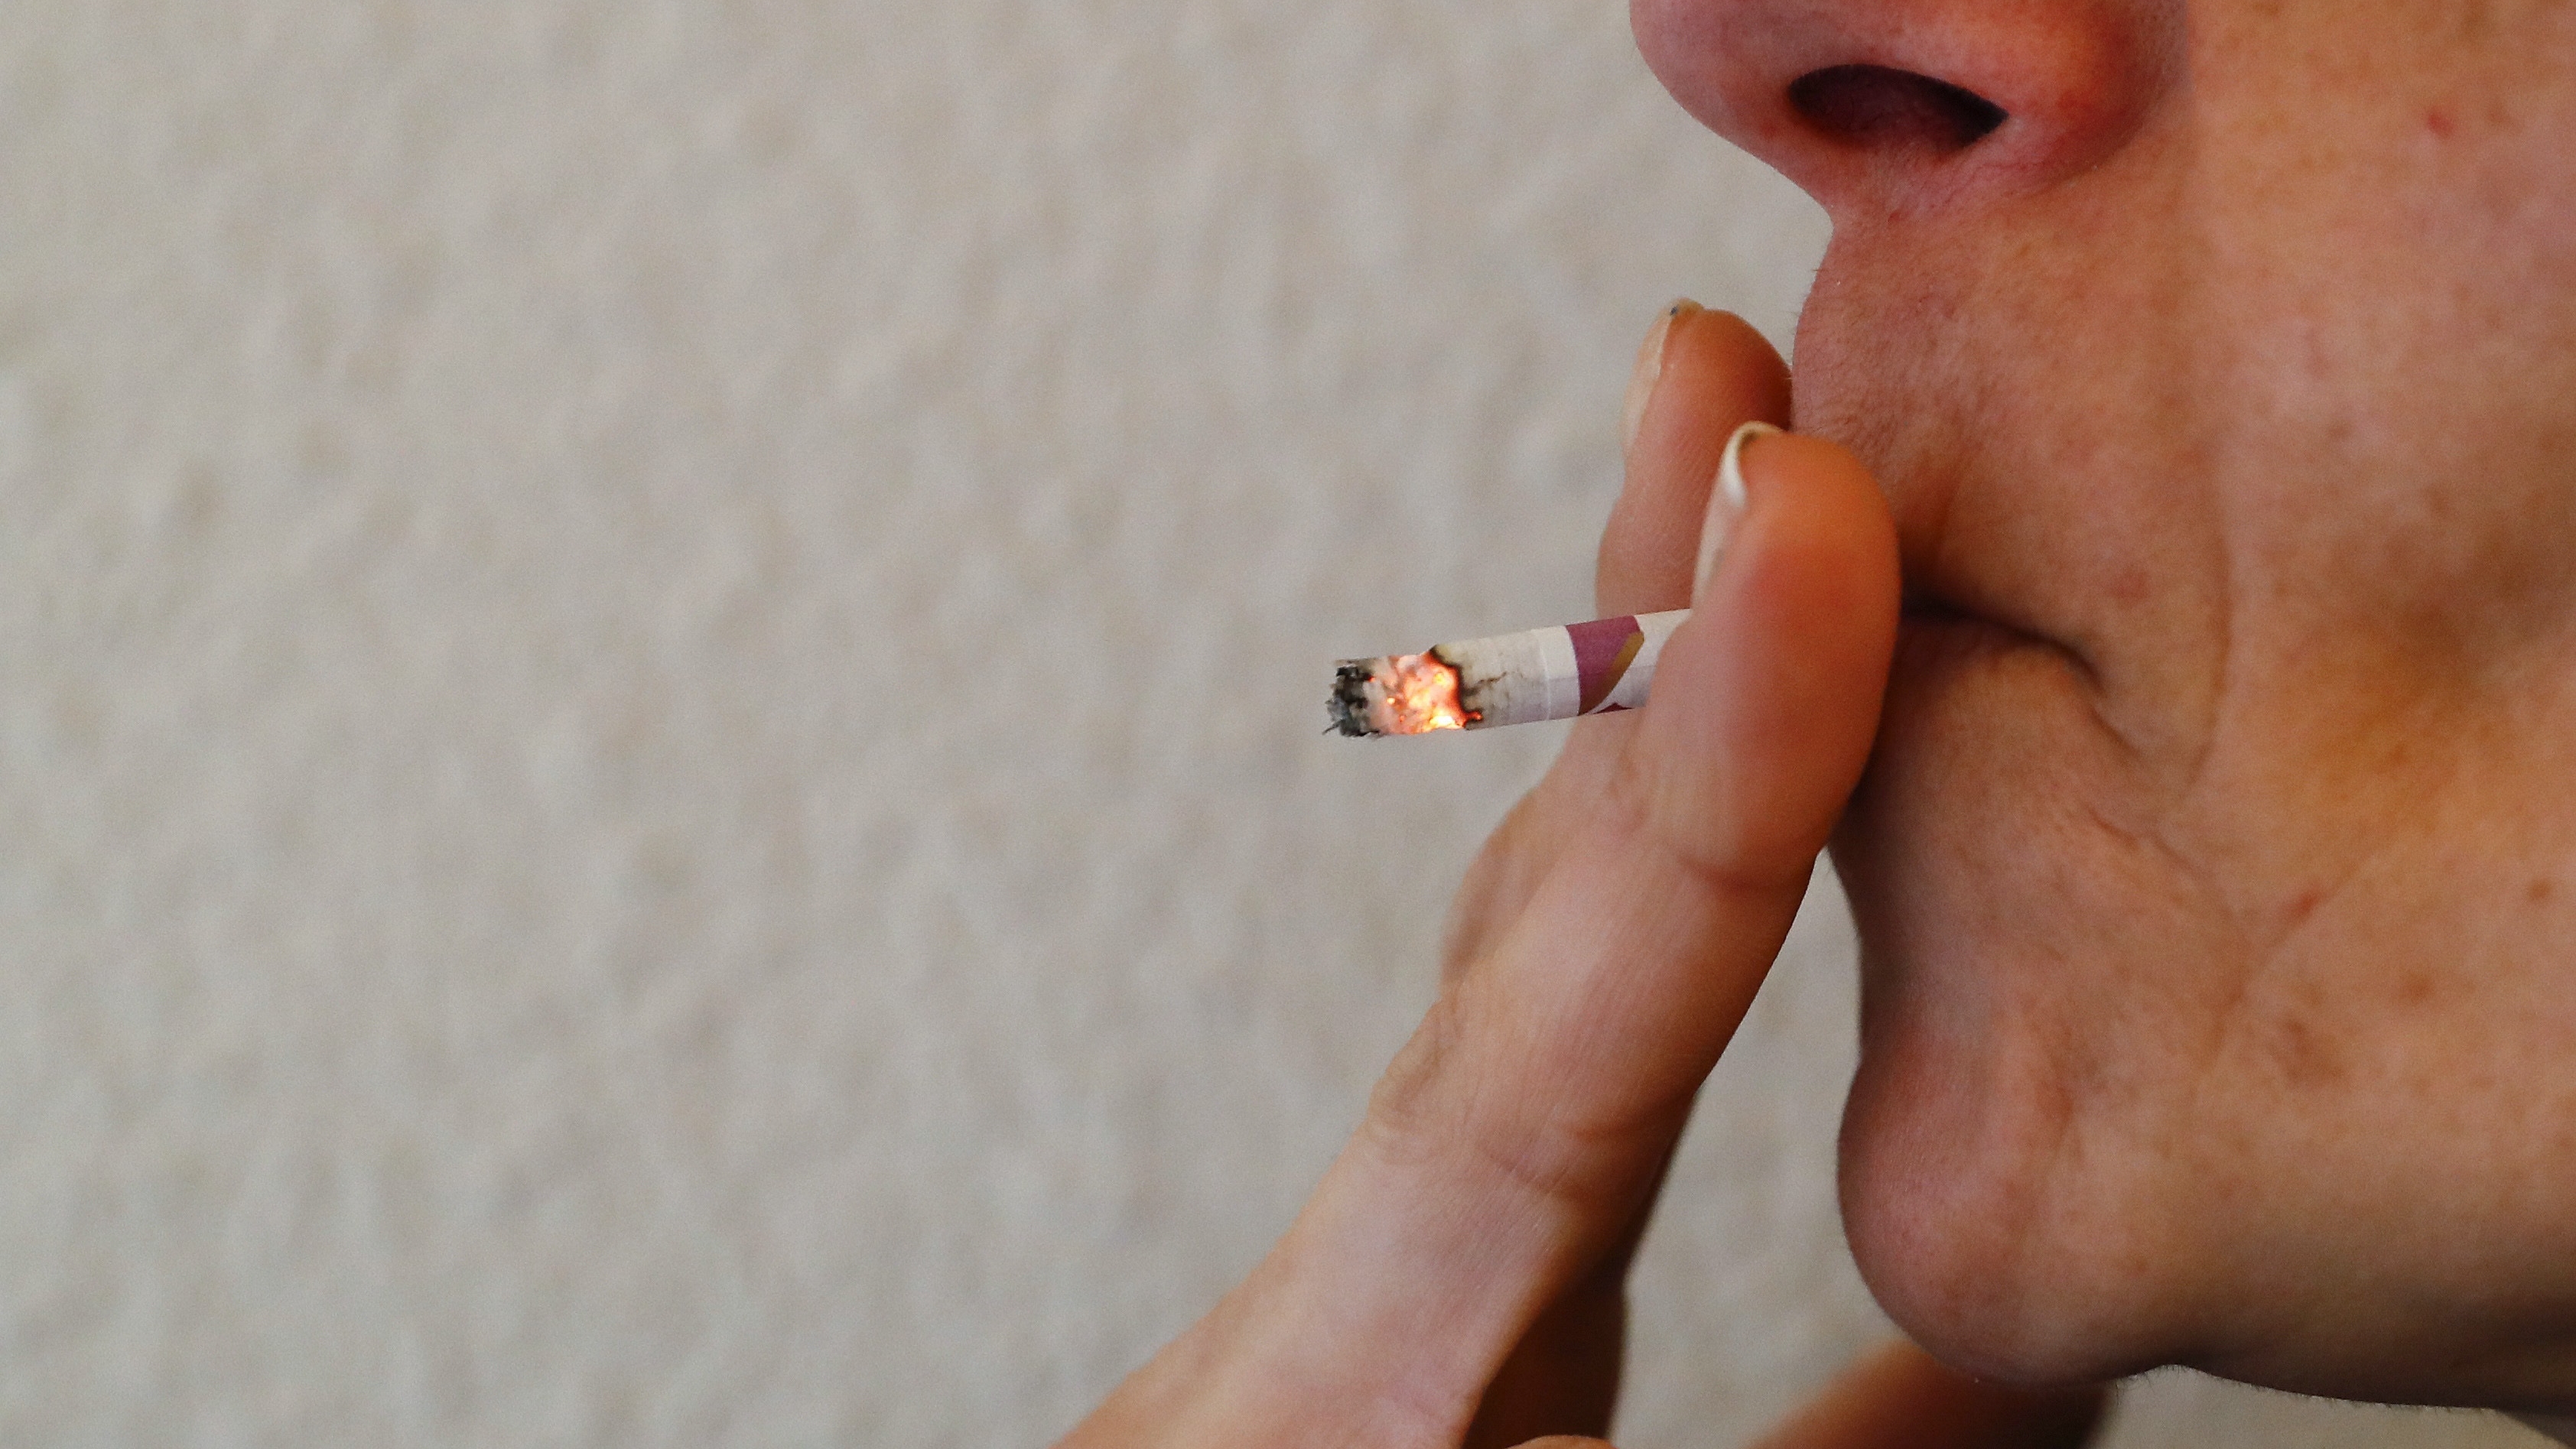 Las nuevas normas de Control de Tabaco prohibirán la publicidad de cigarros en tiendas (EFE/Ballesteros)
